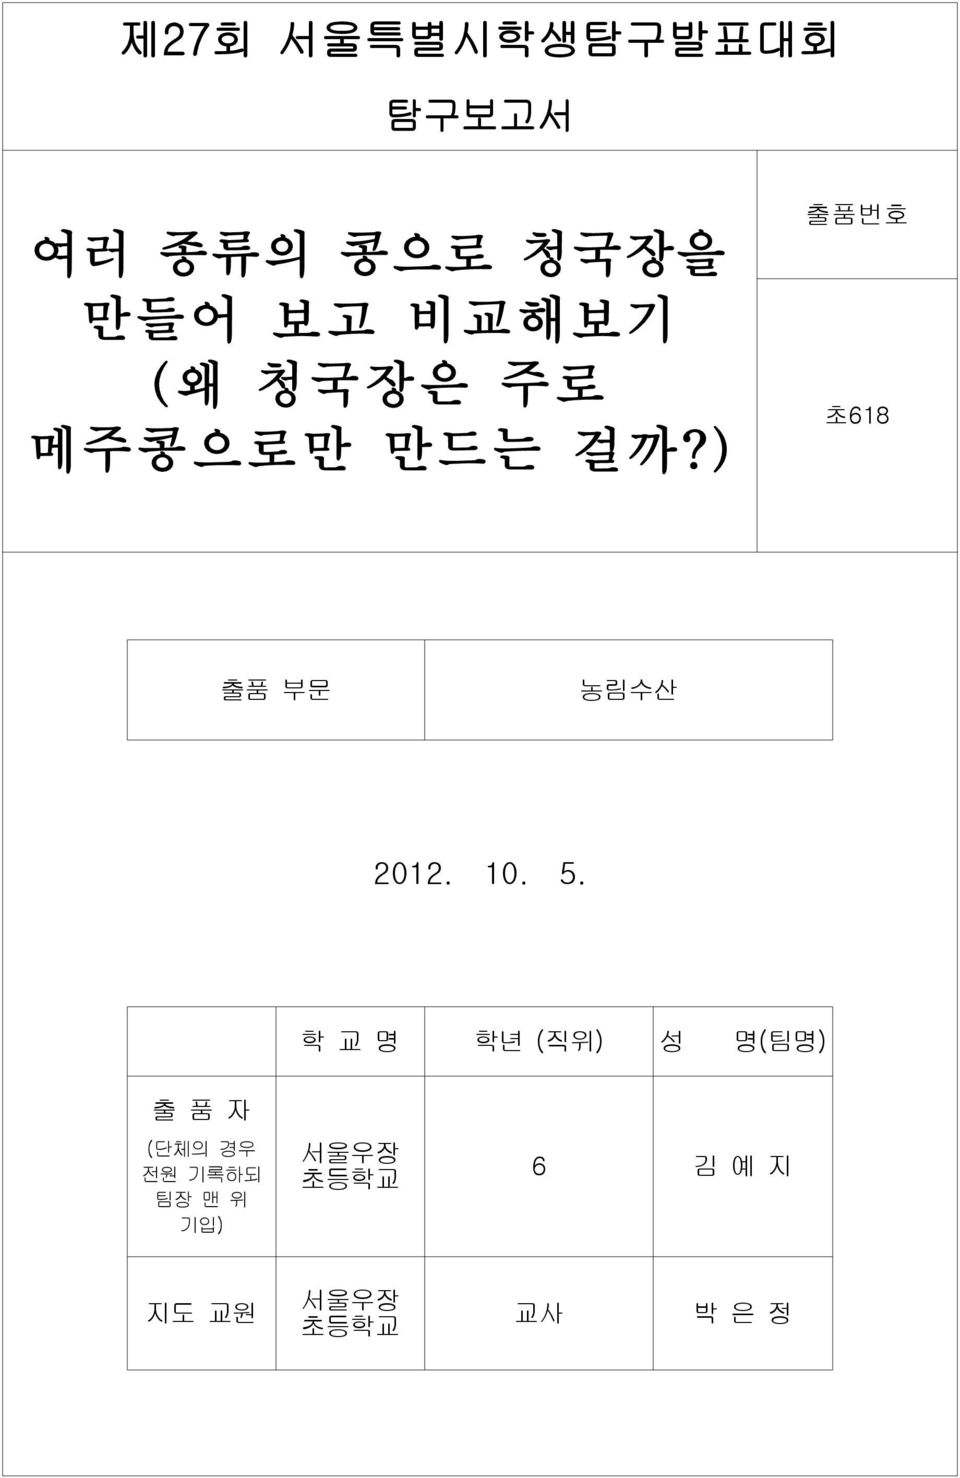 ) 출품번호 초618 출품 부문 농림수산 2012. 10. 5.